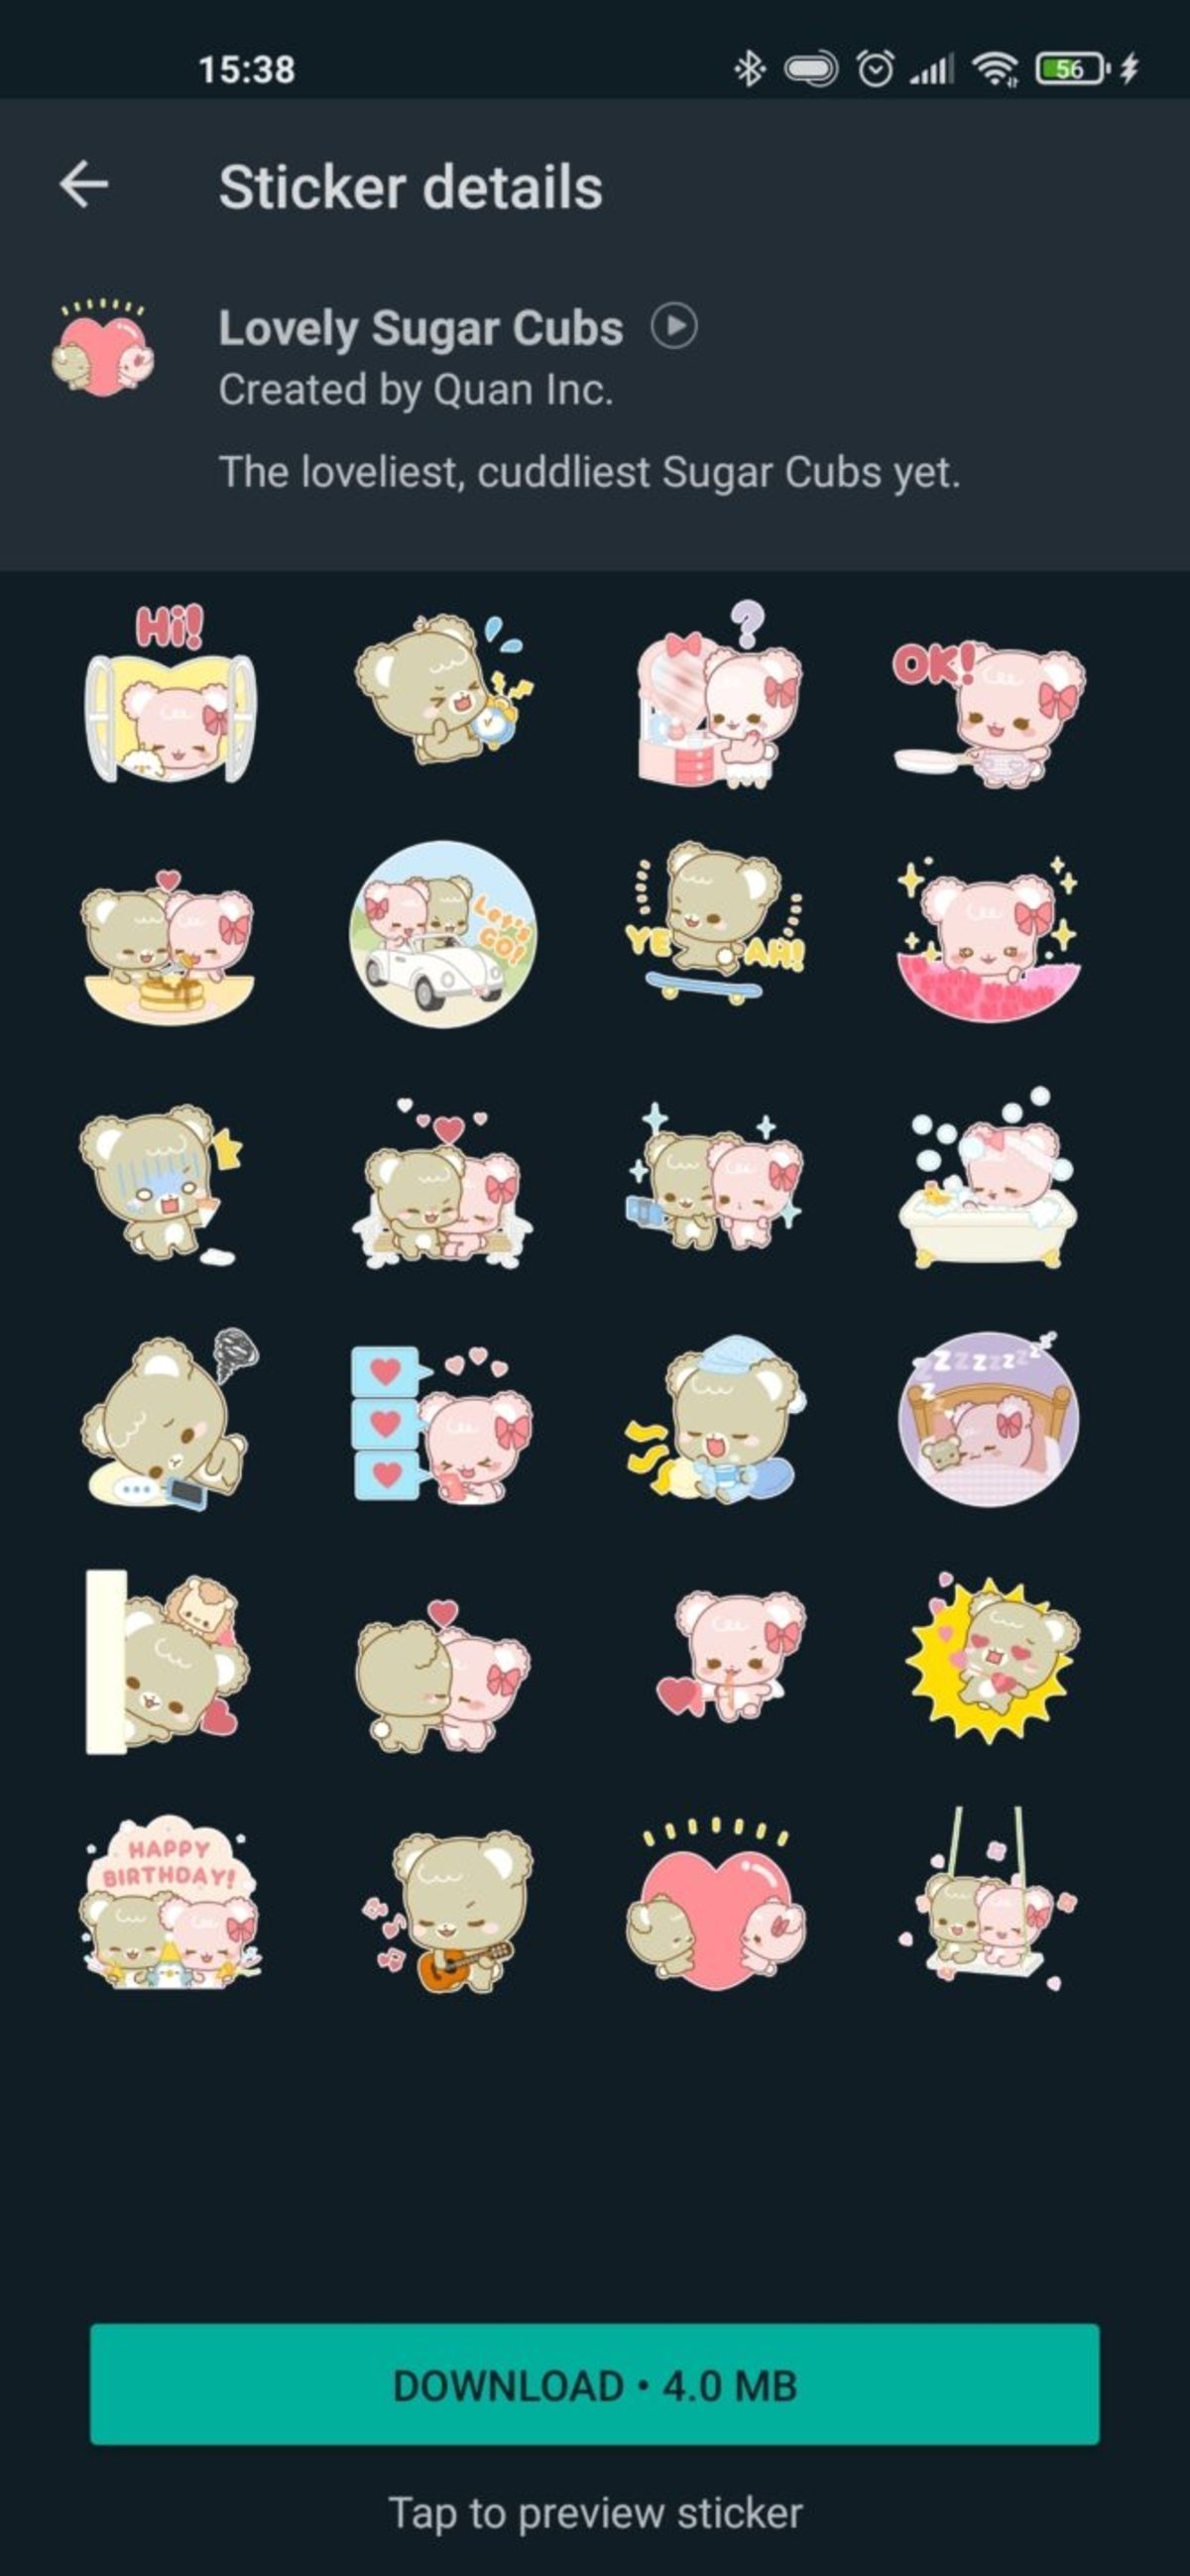 Los nuevos stickers 'Lovely Sugar Cubs' para WhatsApp